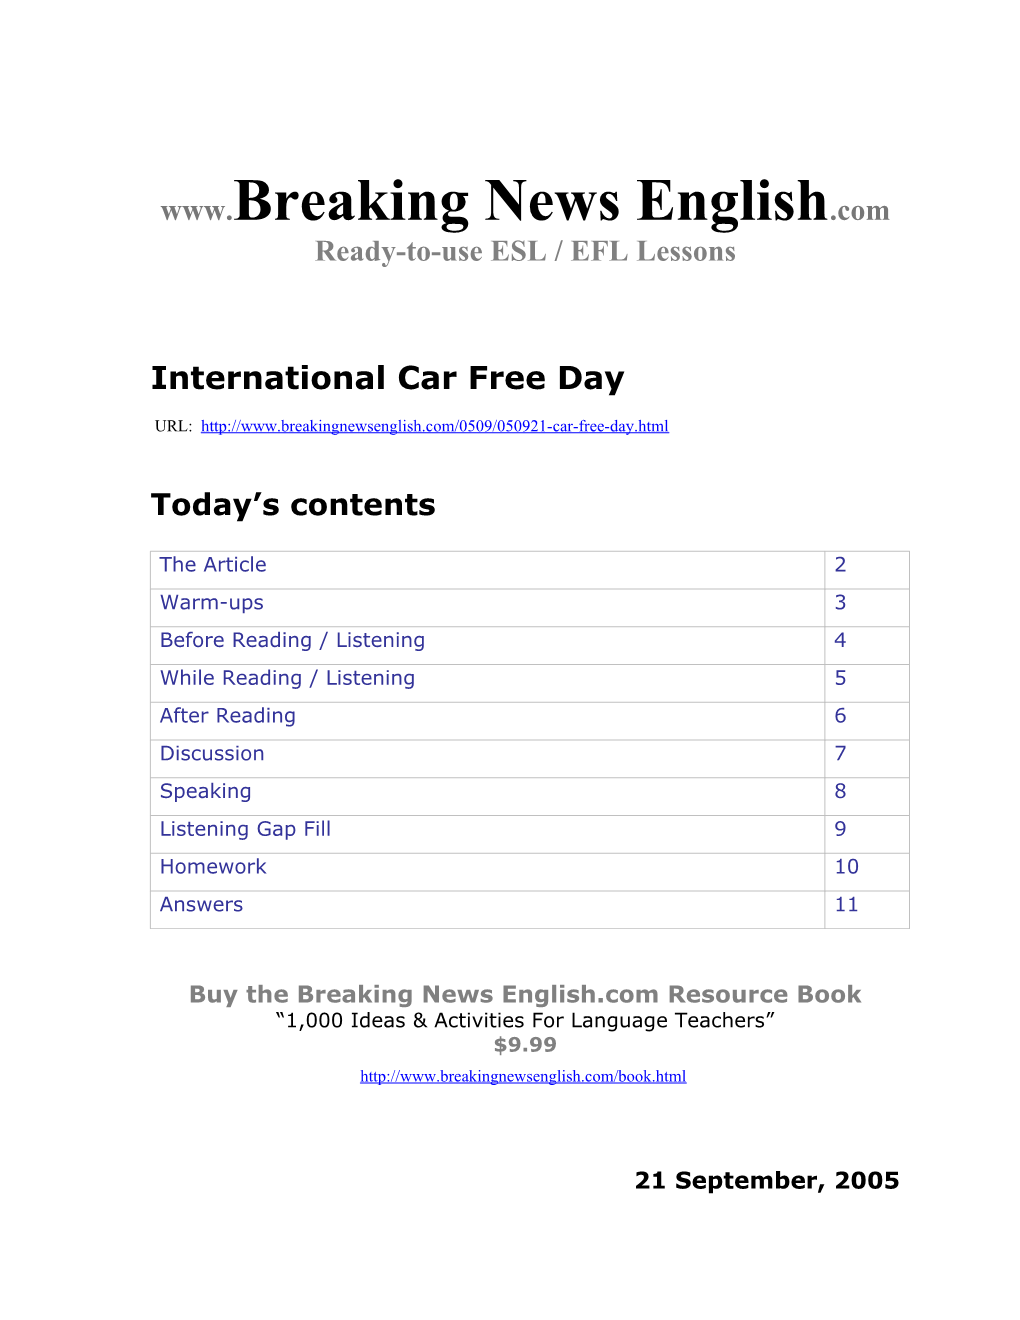 International Car Free Day